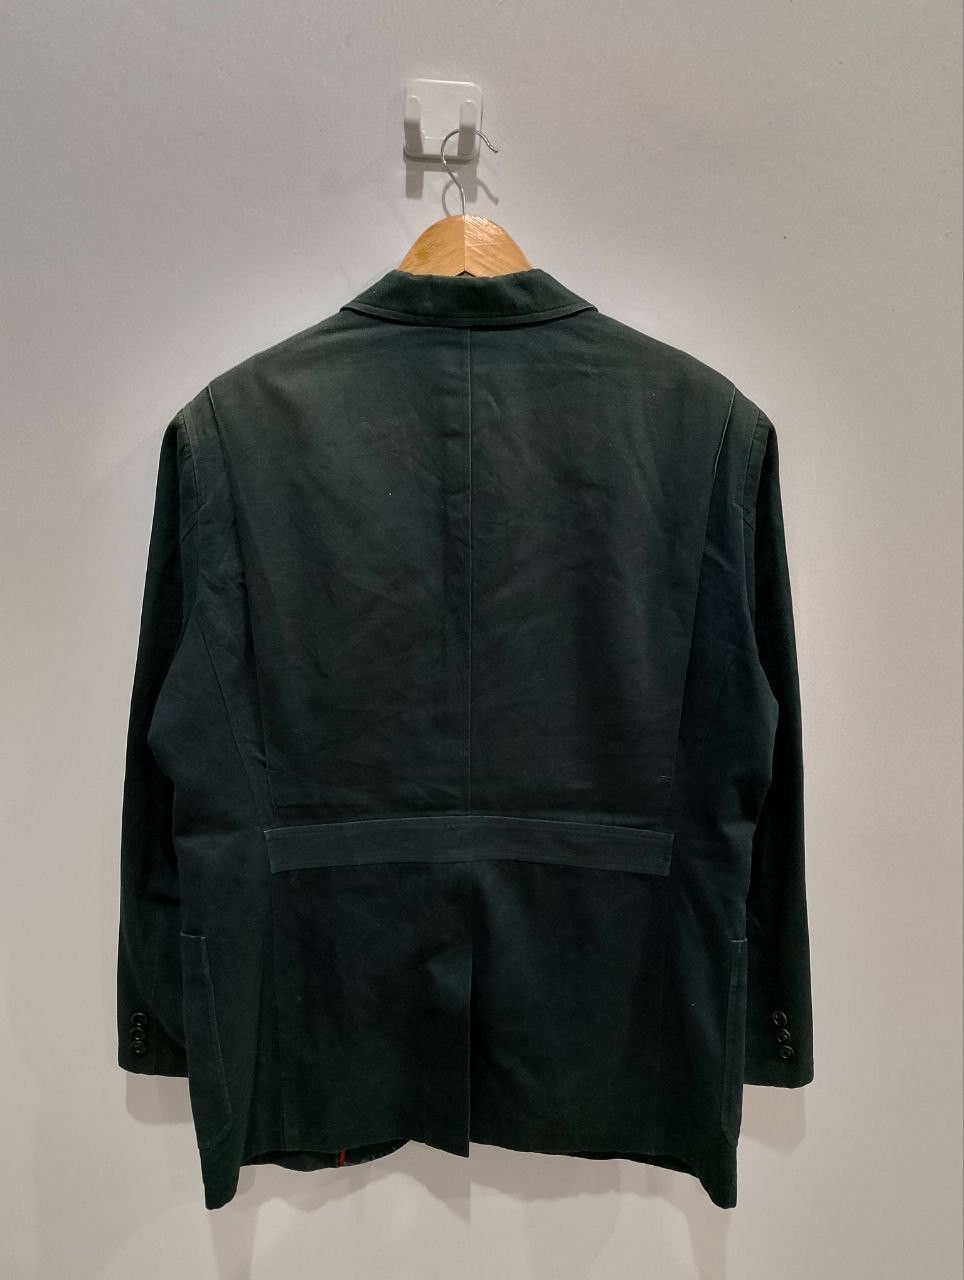 GOLDEN BEAR 3 Button Green Suede Coats Blazer Jacket - 3